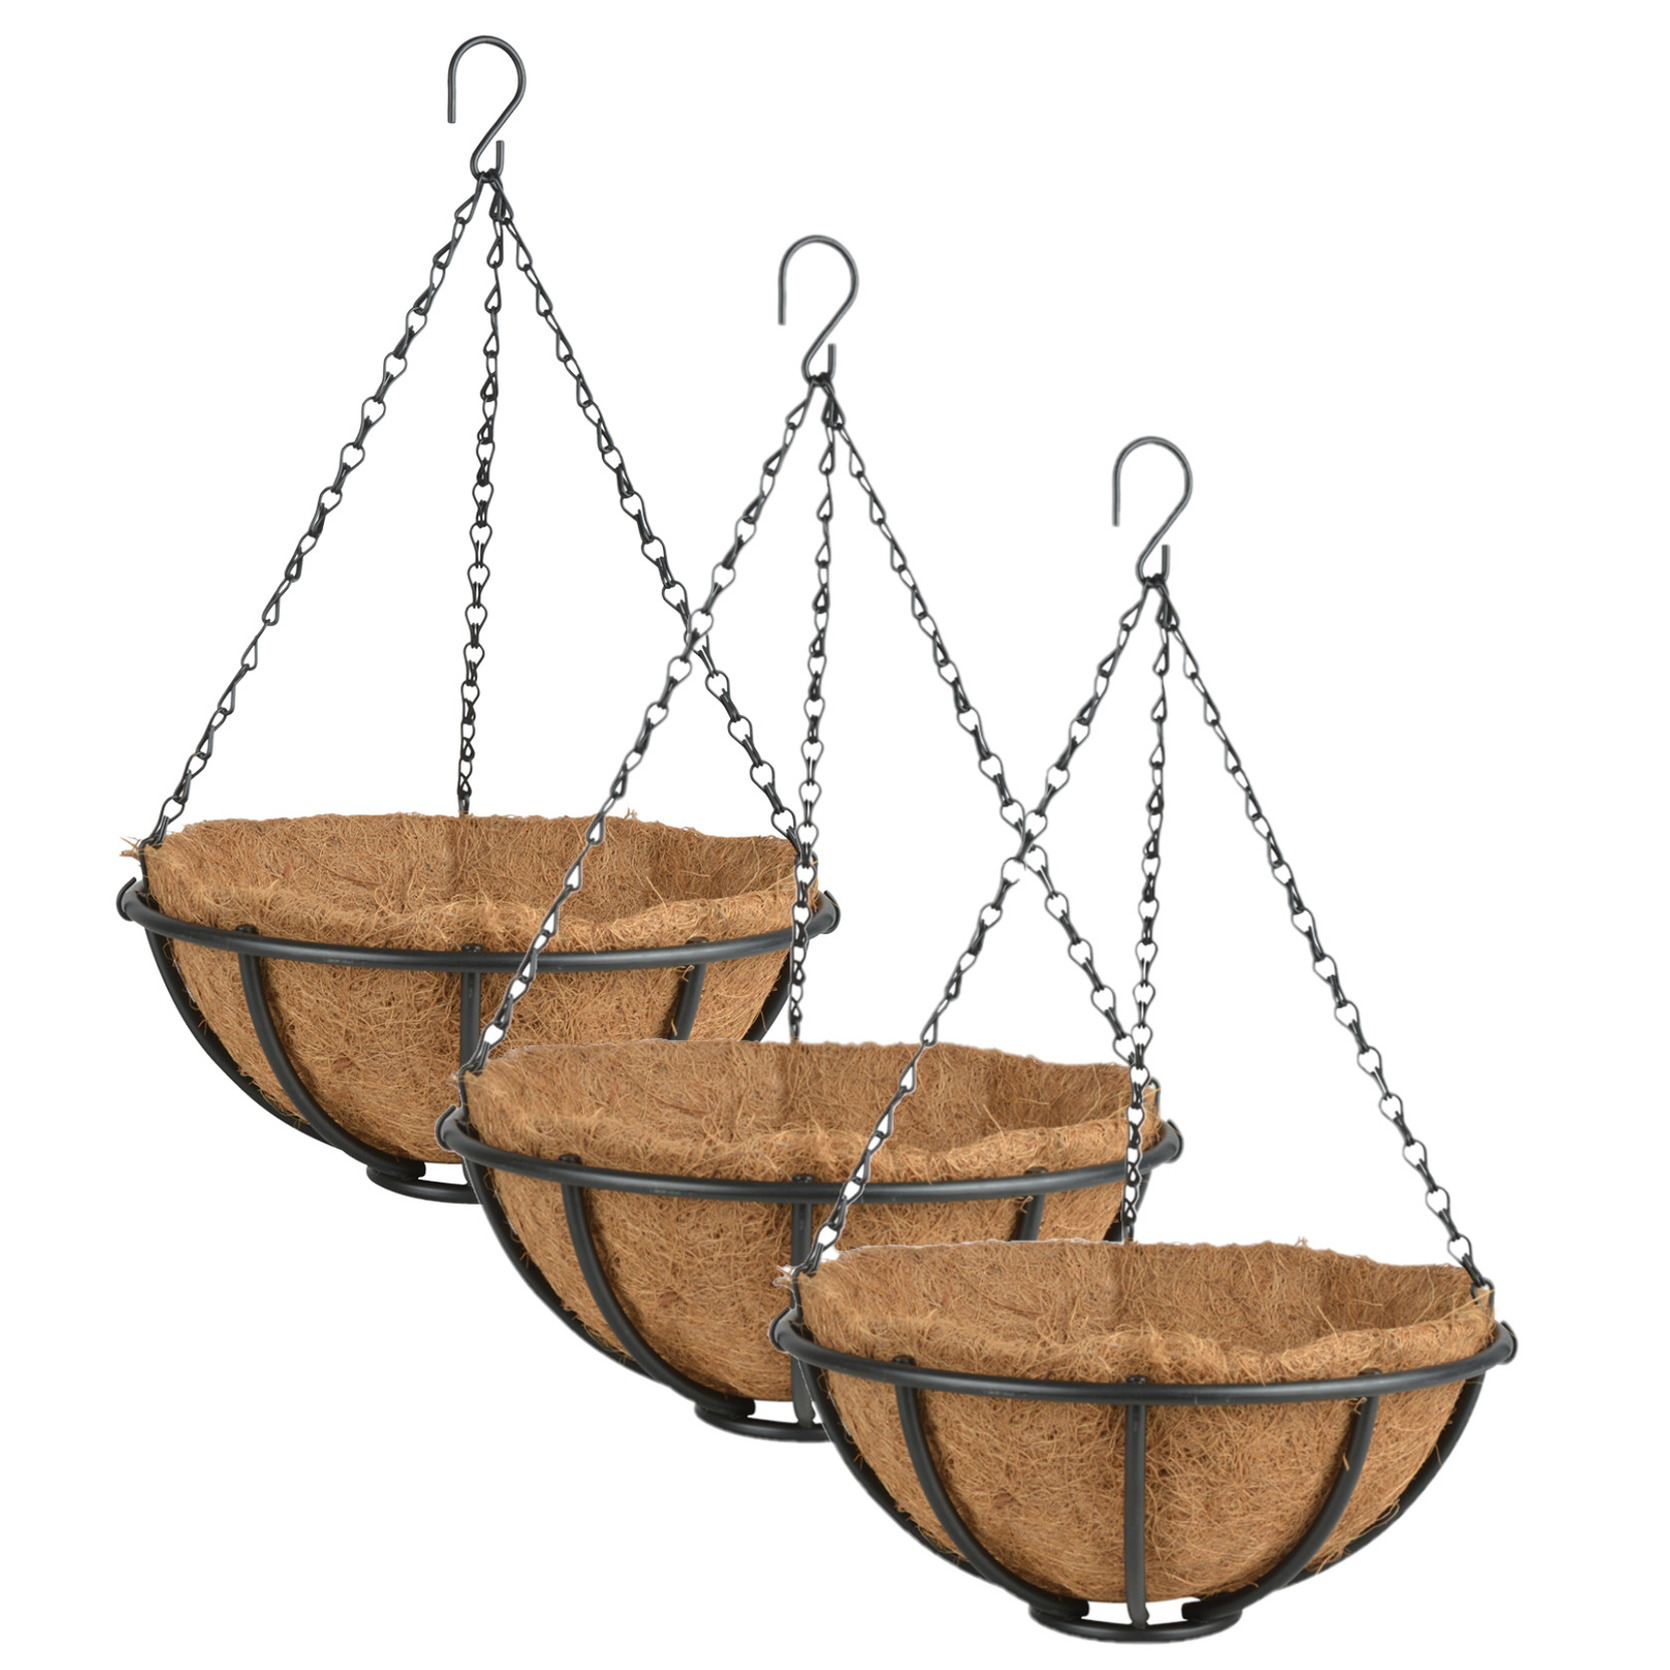 3x stuks metalen hanging baskets-plantenbakken met ketting 30 cm inclusief kokosinlegvel